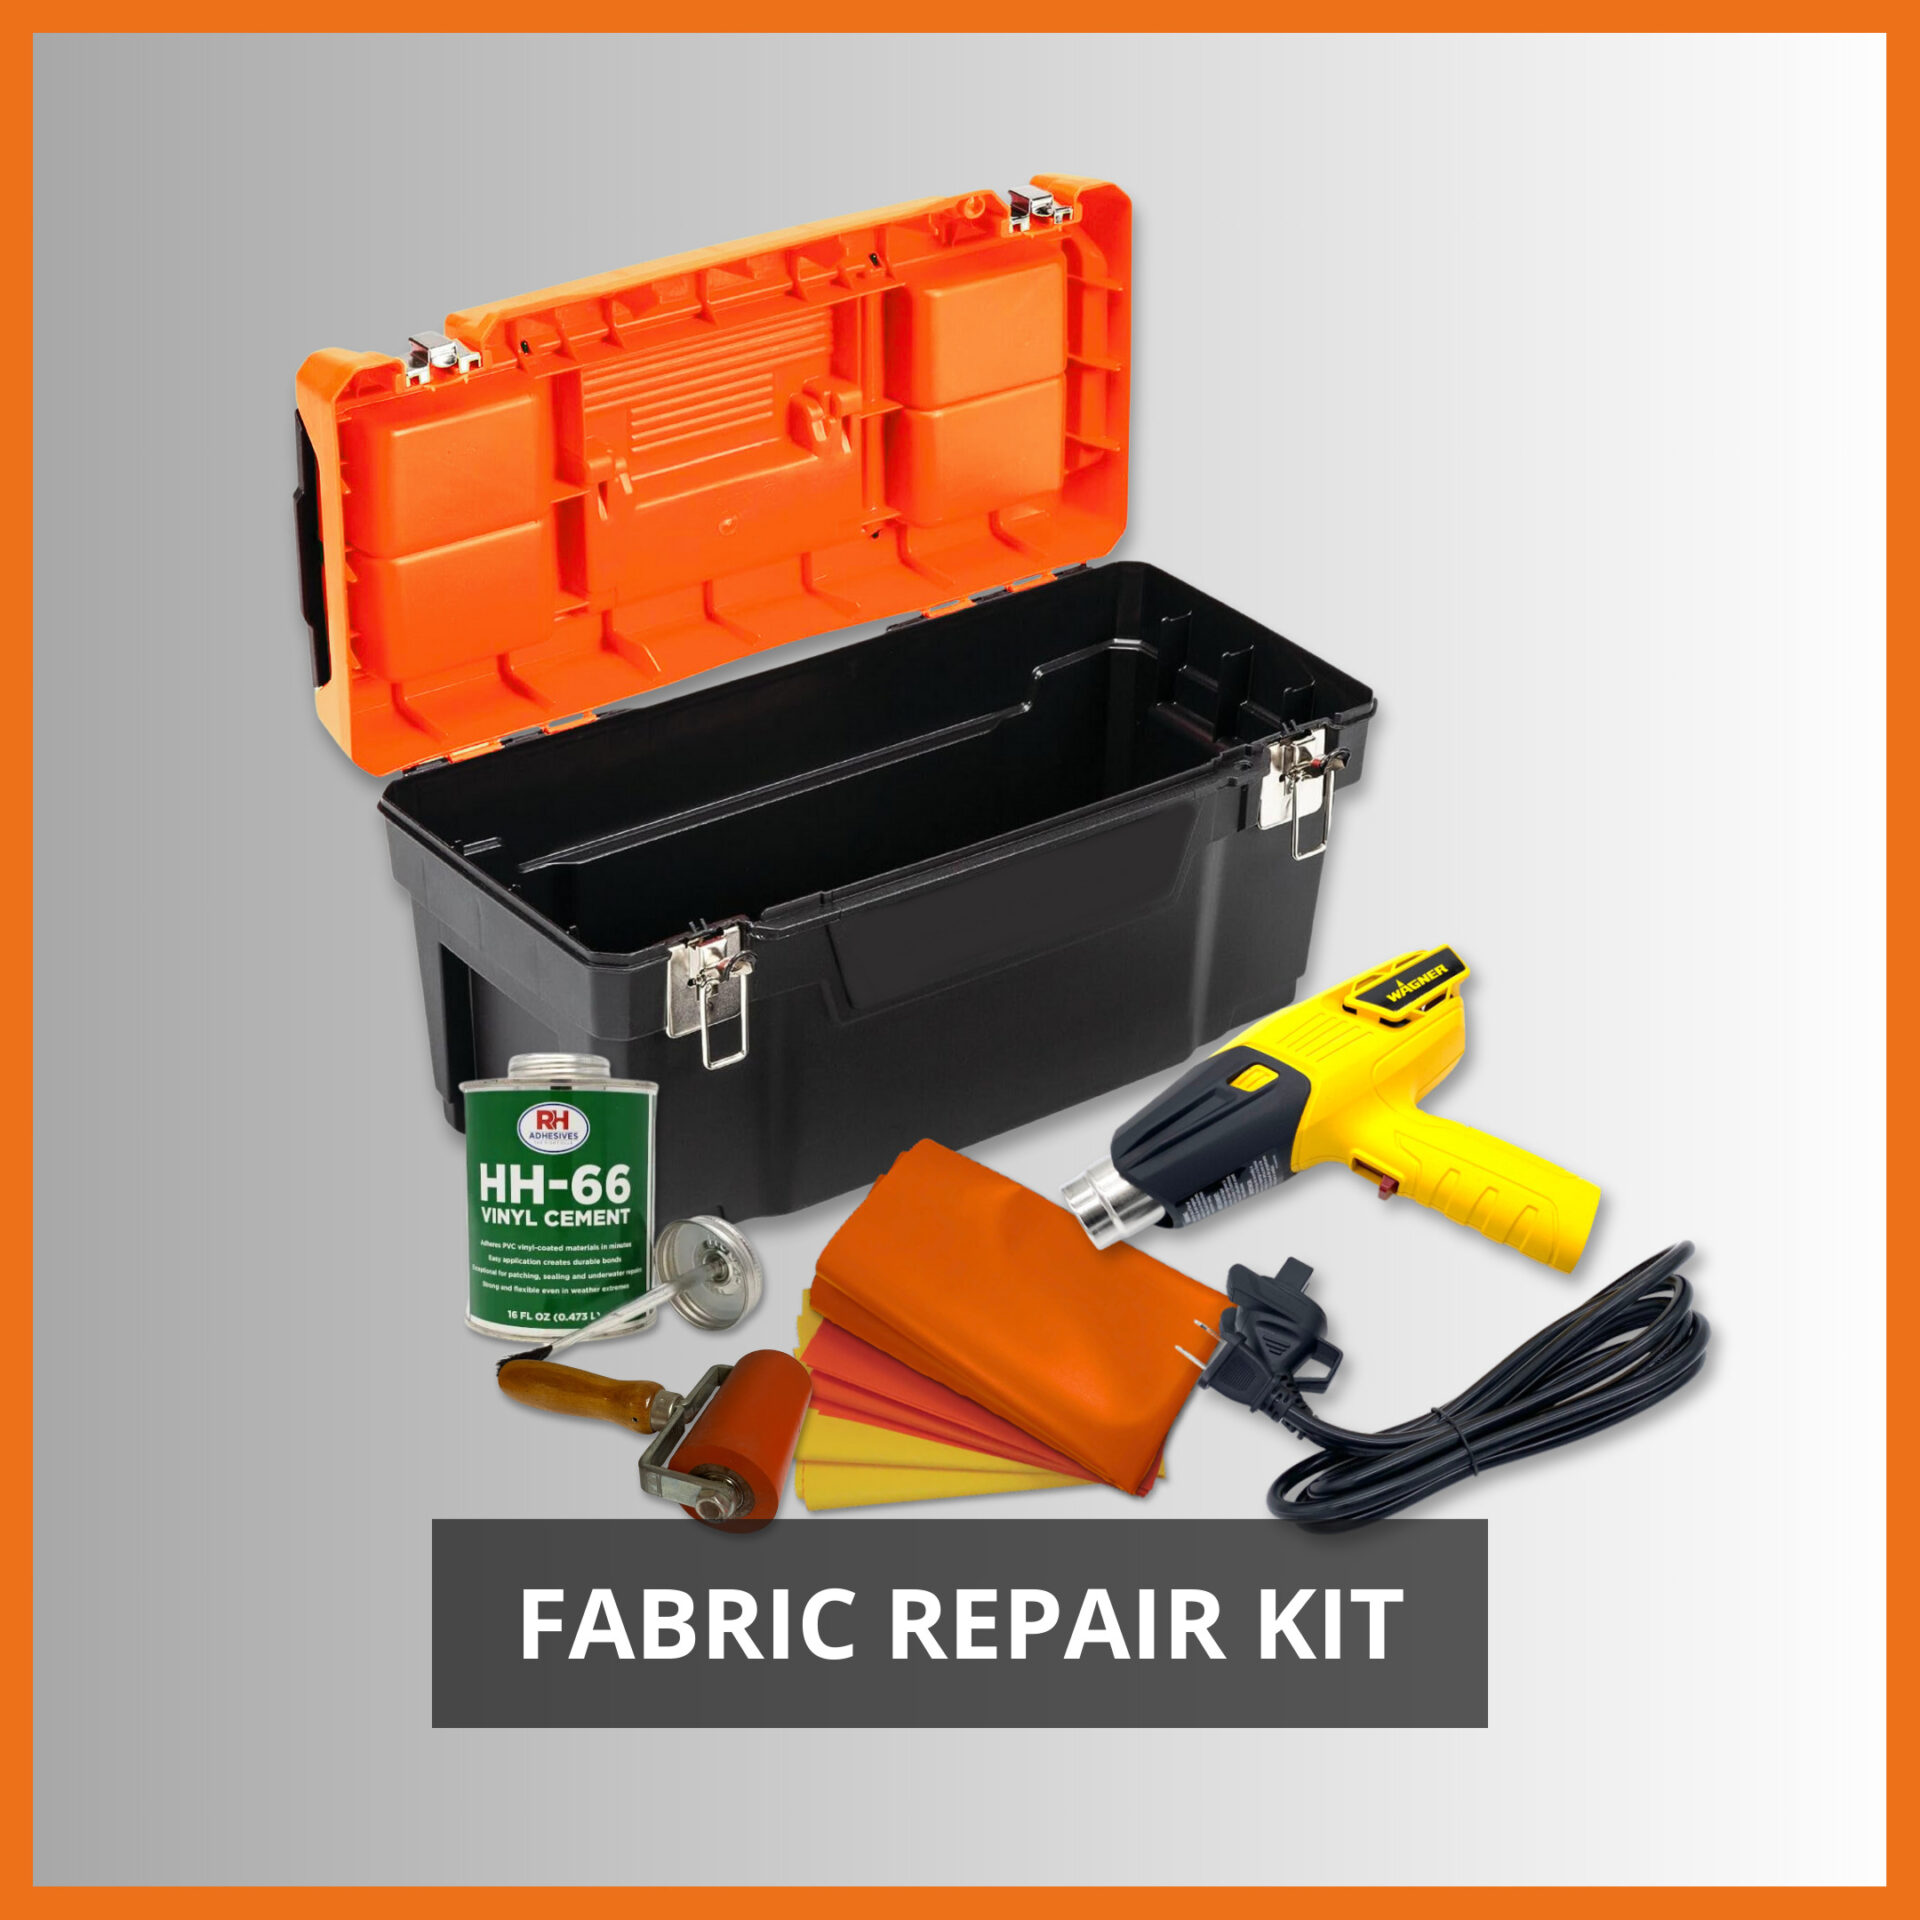 Fabric Repair Kits